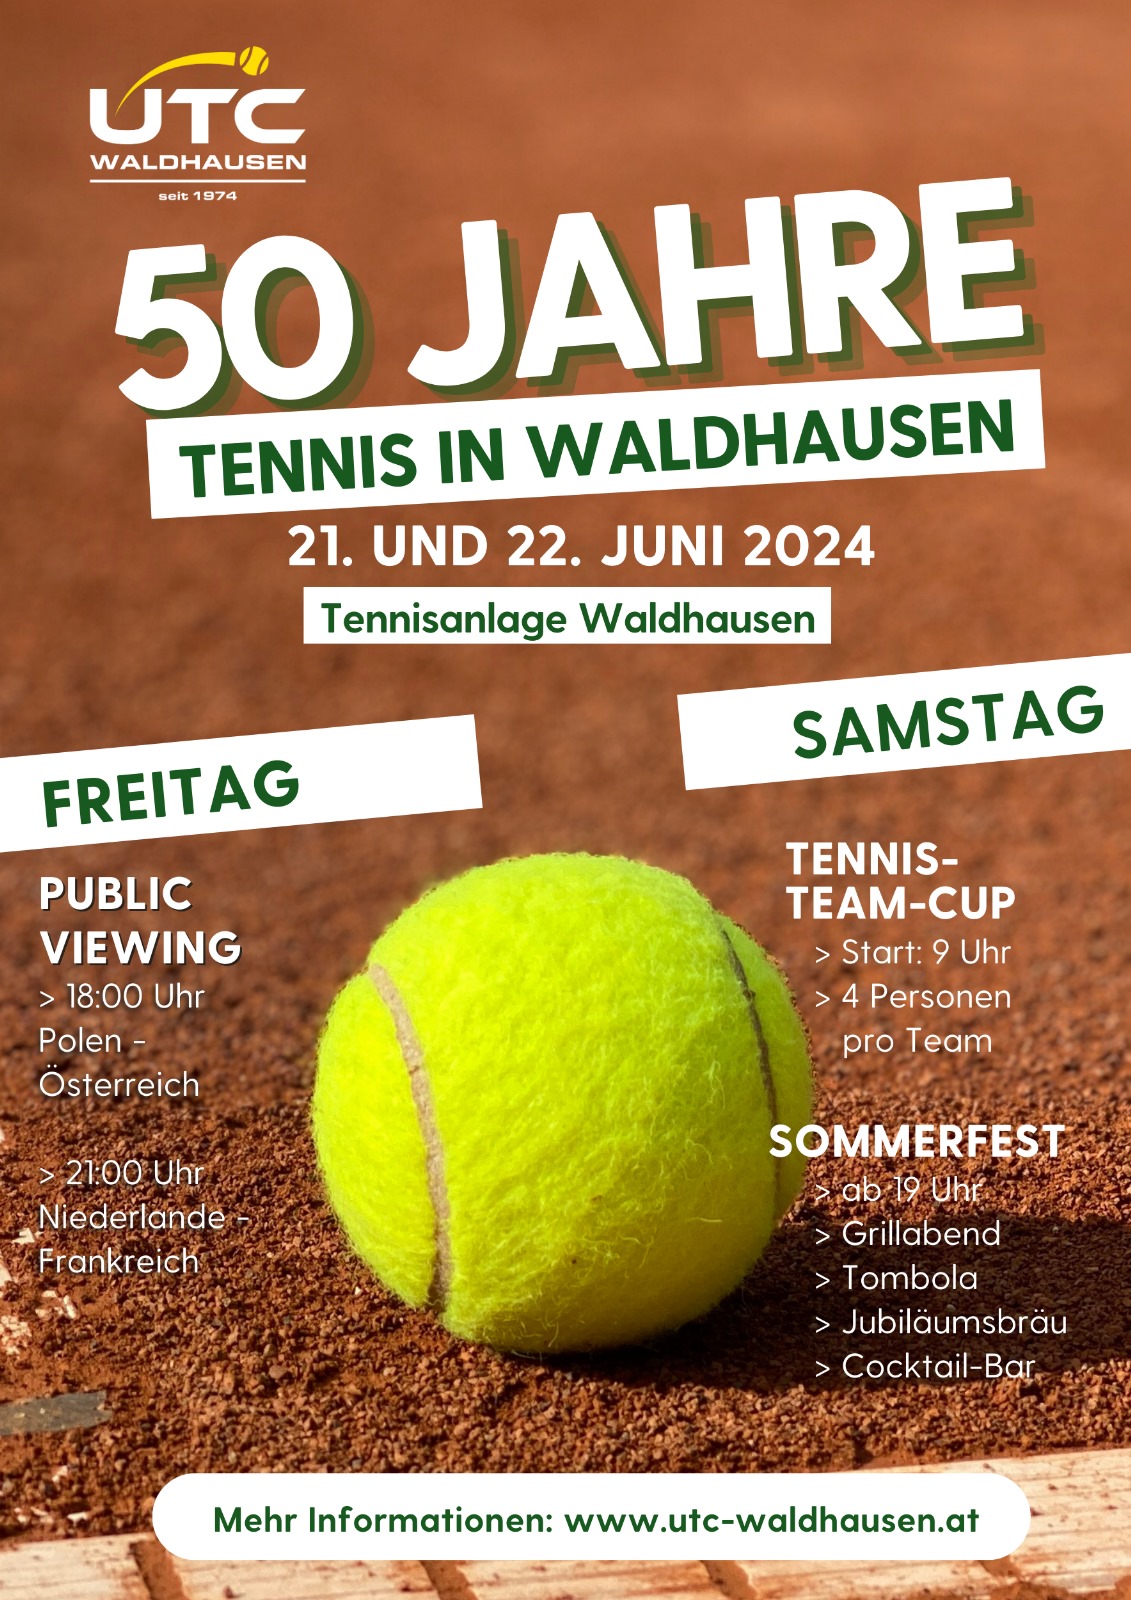 50 jahre tennis